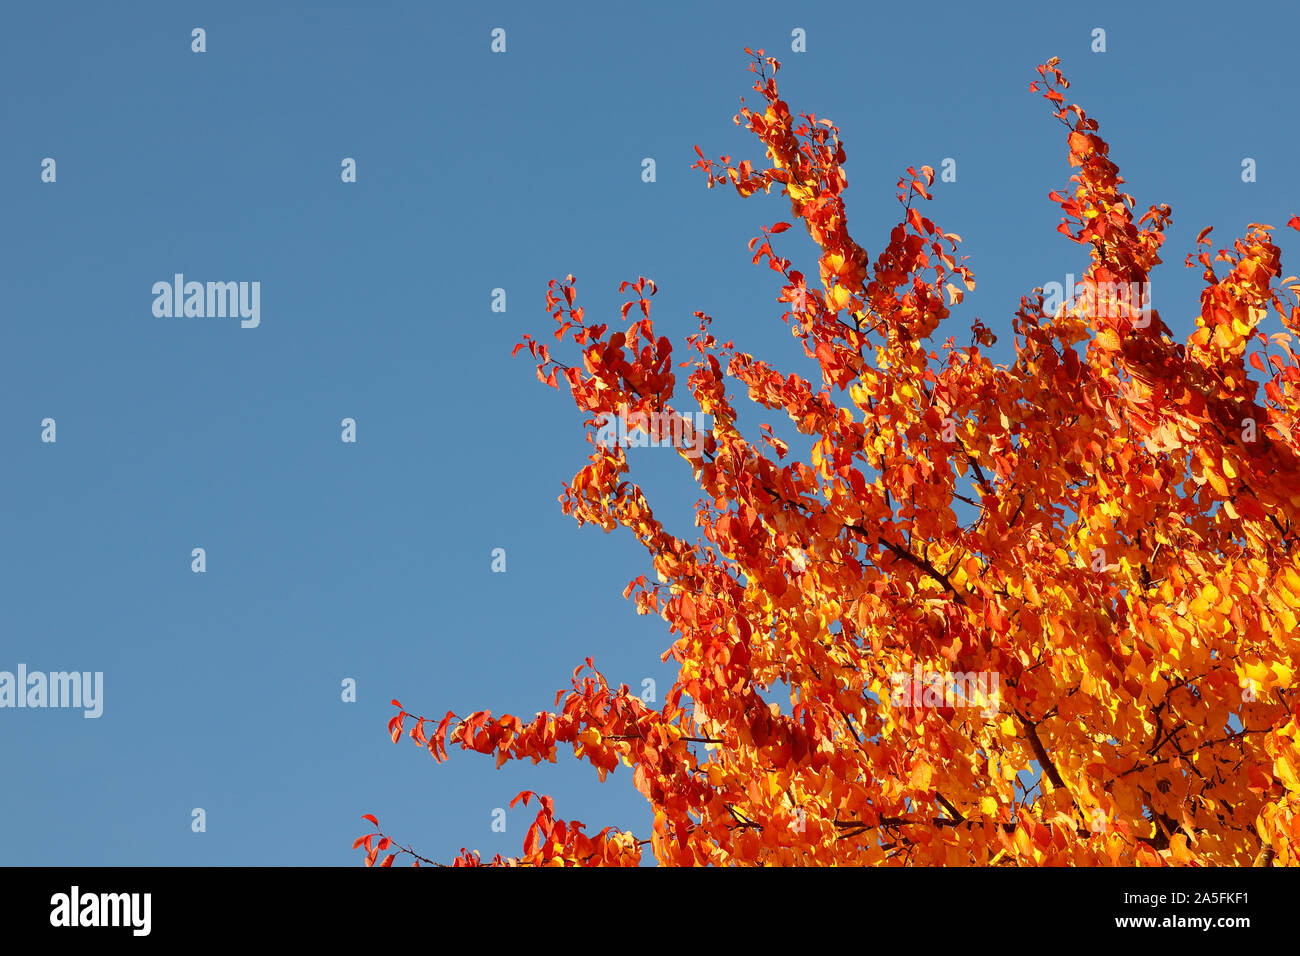 Bäume mit Blättern im Herbst Farben gegen einen klaren blauen Himmel. Stockfoto